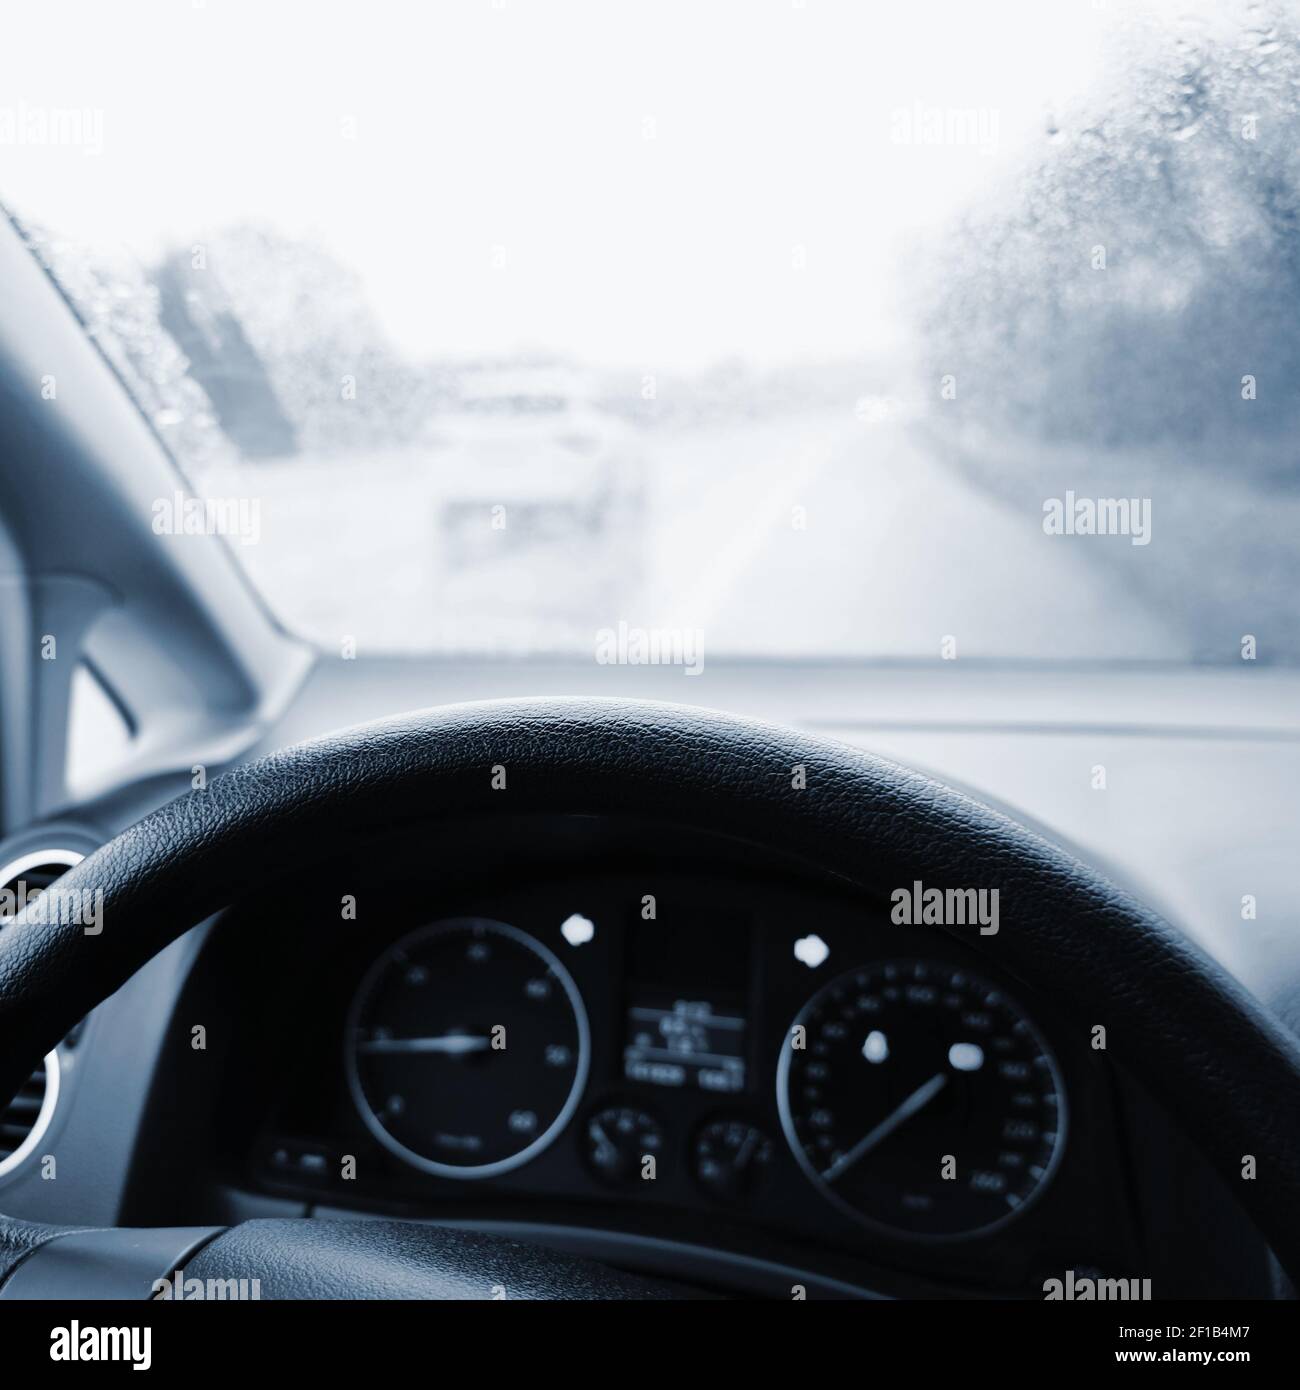 Vue du conducteur - intérieur de la voiture avec volant et tableau de bord. Hiver mauvais temps pluvieux et conduite dangereuse sur la route. Banque D'Images